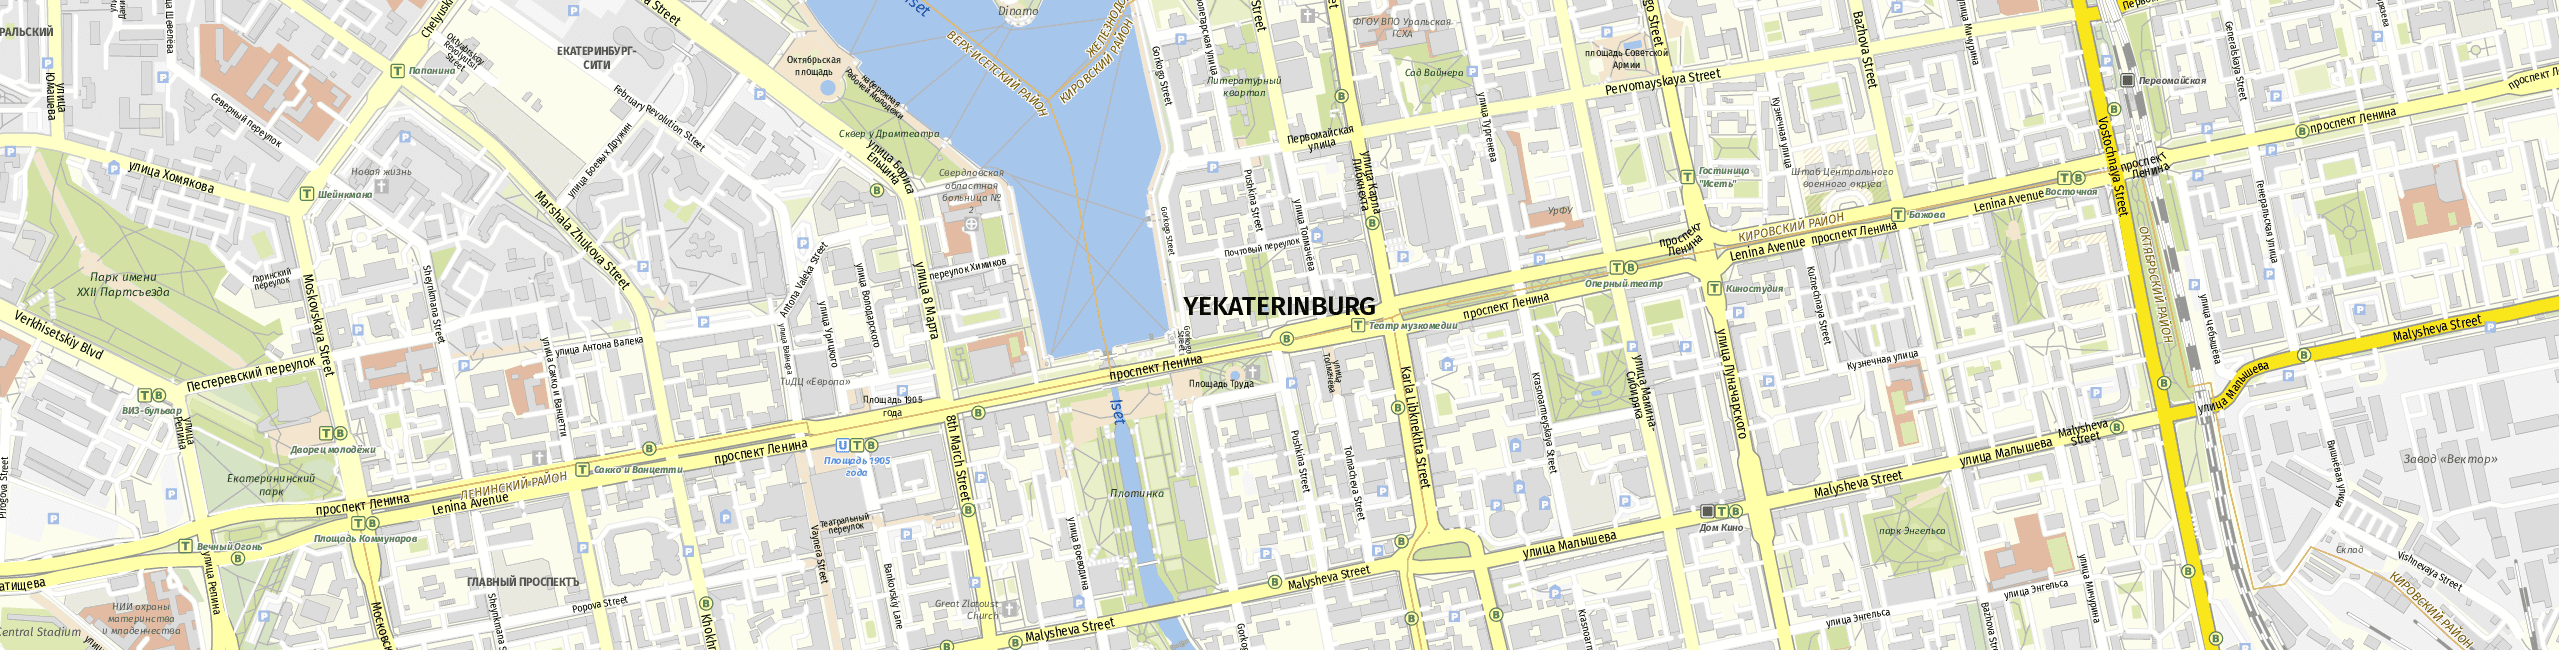 Stadtplan Jekaterinburg zum Downloaden.